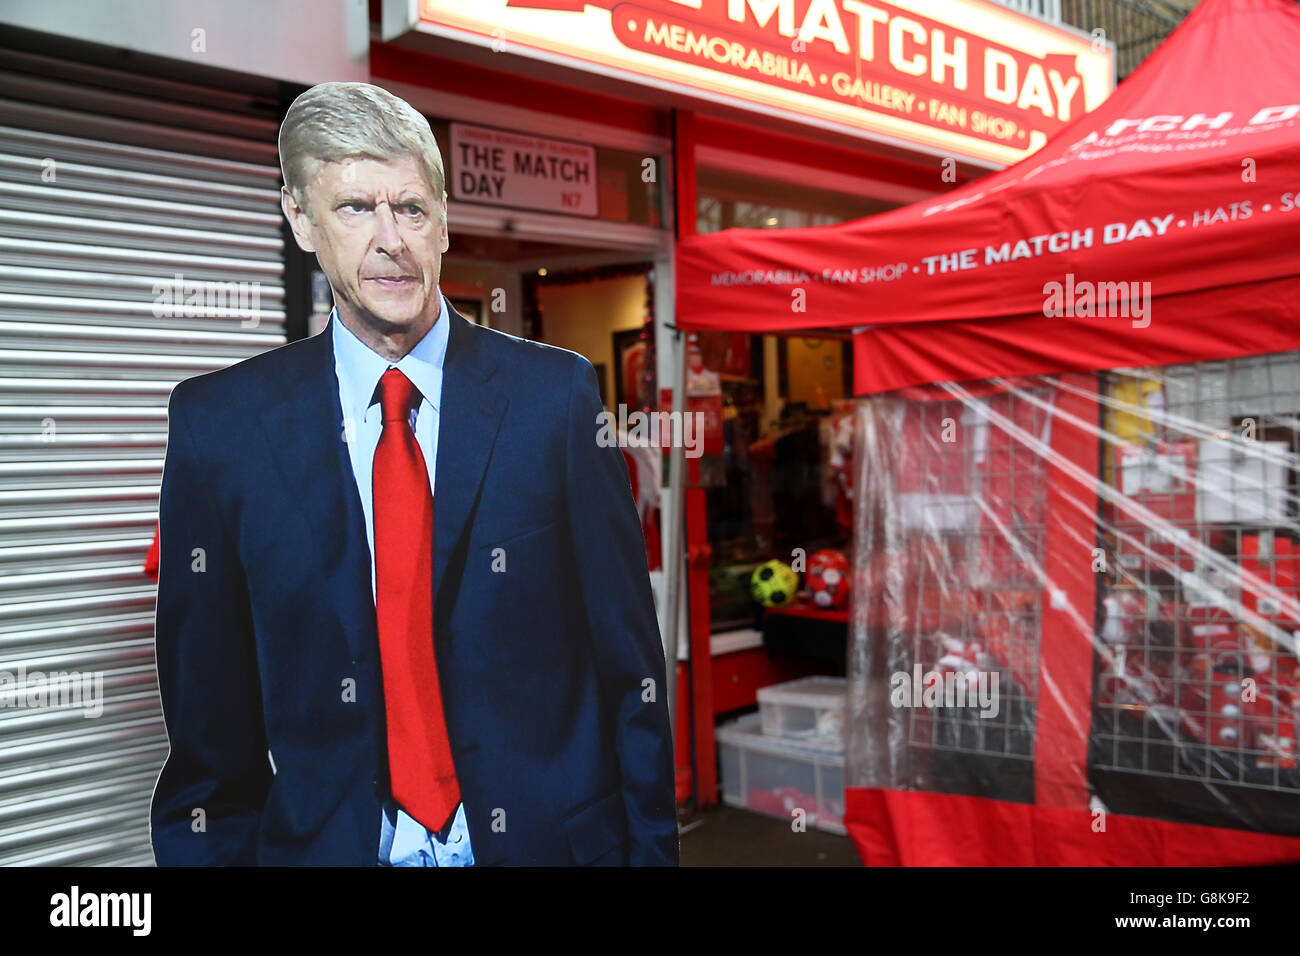 Une découpe de carton du gérant d'Arsenal Arsene Wenger avant le match de la Barclays Premier League au stade Emirates, Londres. Banque D'Images